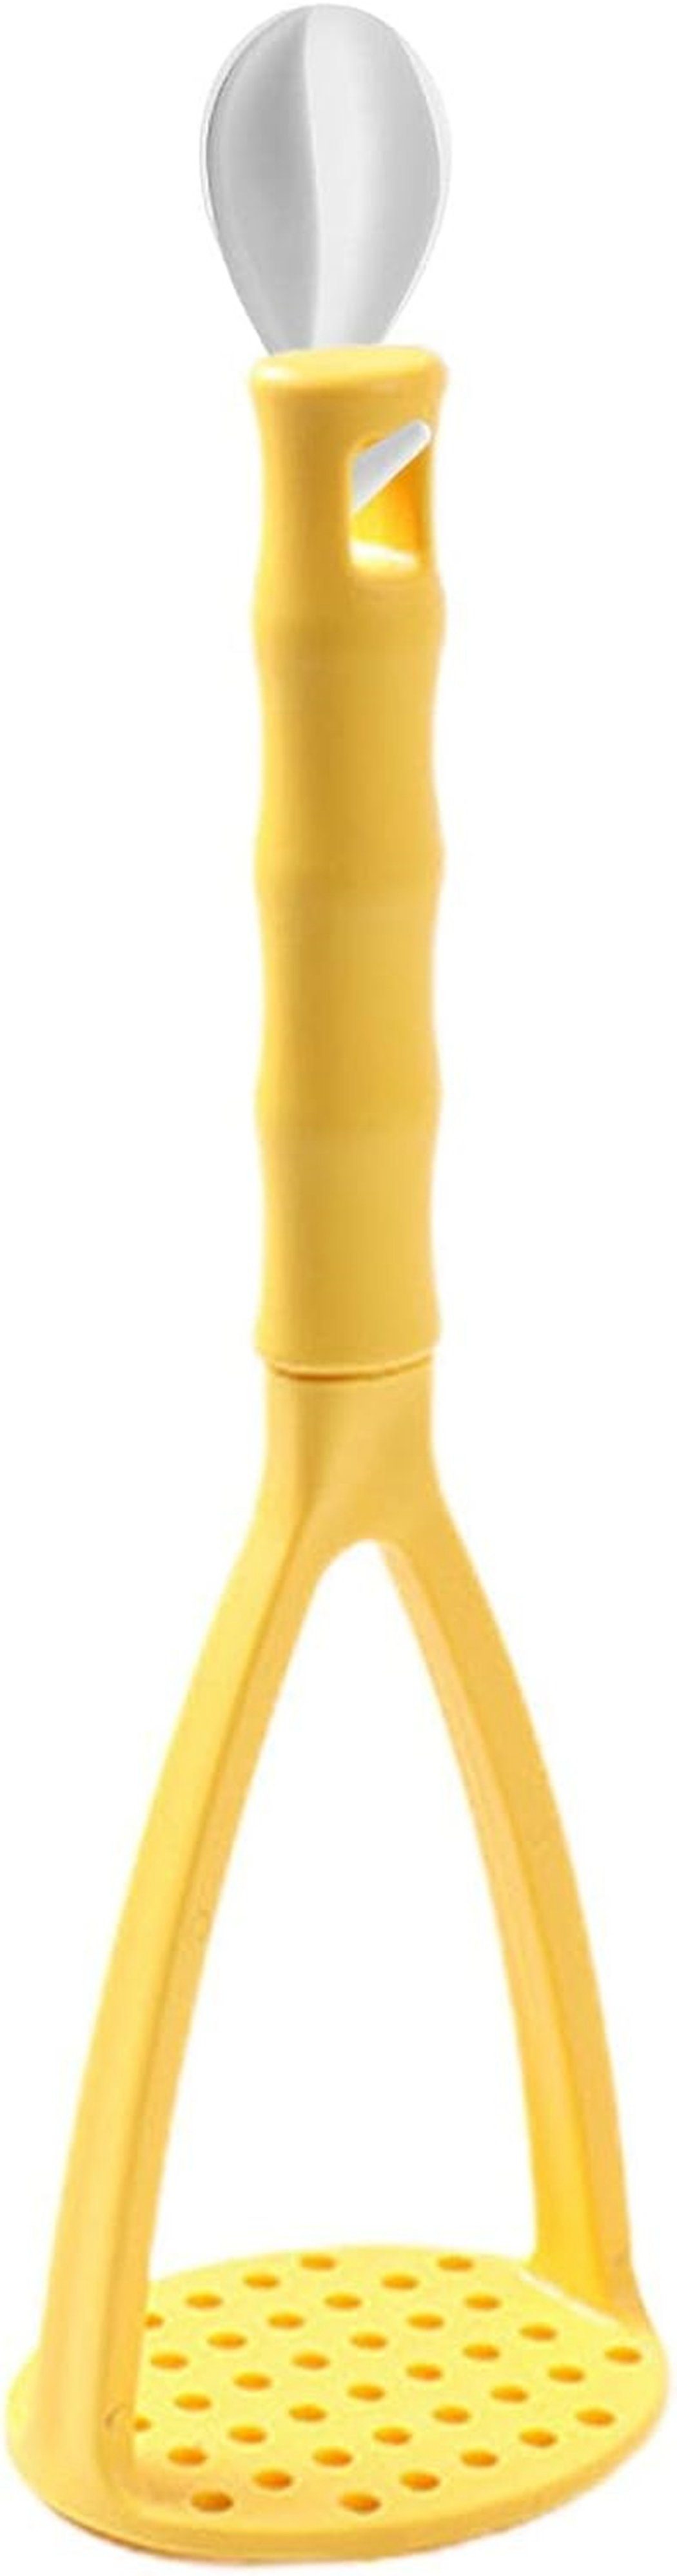 TUABUR Kartoffelstampfer Gelb Kartoffelpüree-Artefakt-Kürbisstampfer-Werkzeug